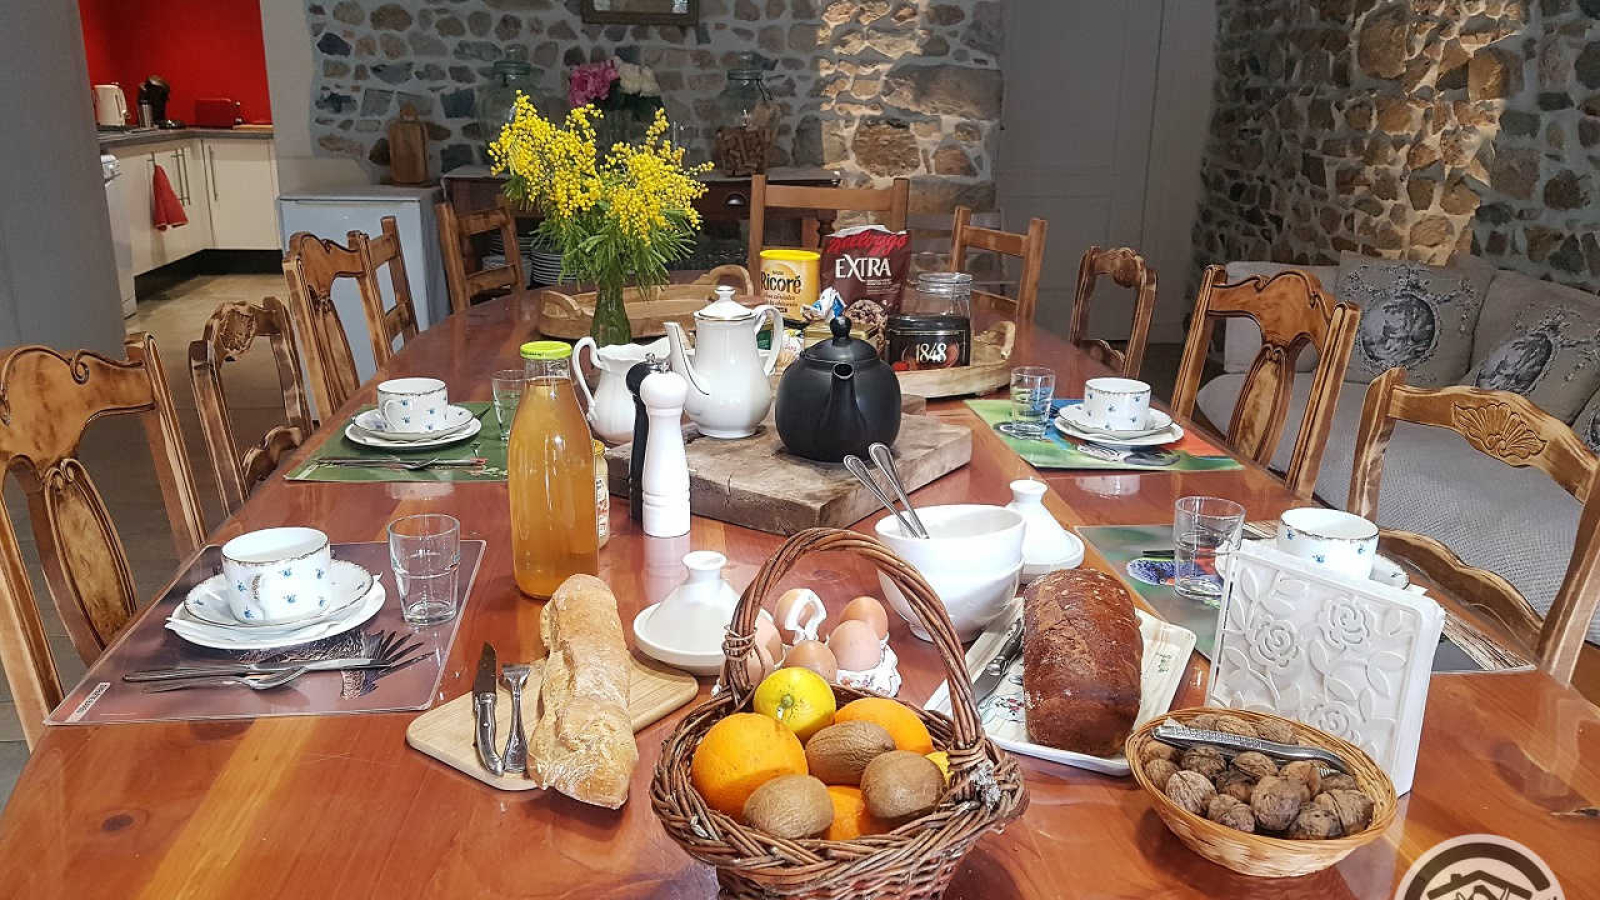 Chambres d'Hôtes 'Le Nid Beaujolais' à Quincié-en-Beaujolais dans le Rhône - Beaujolais : table des petits déjeuners.